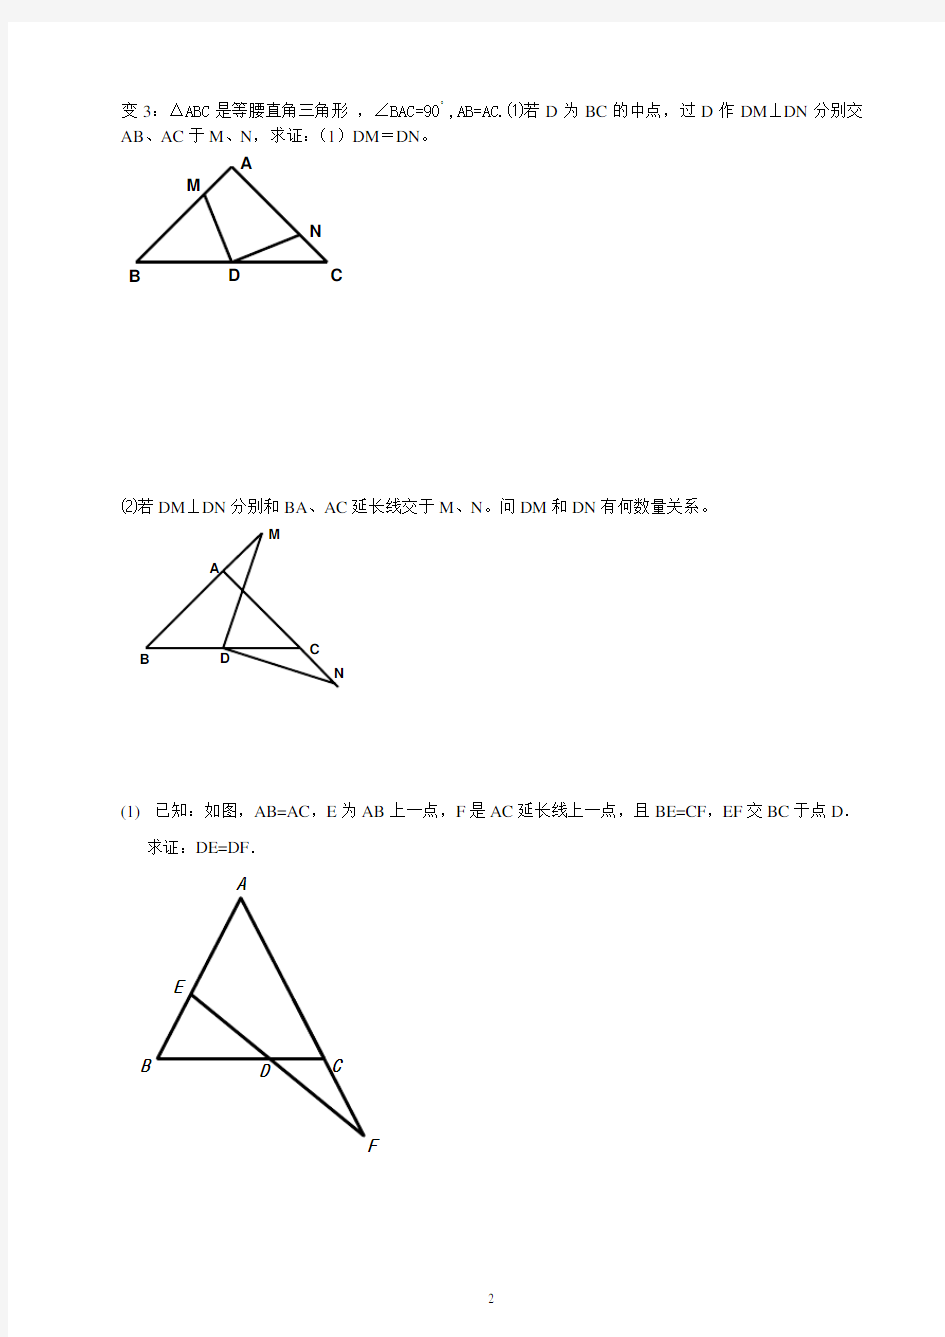 等腰三角形三线合一典型题型